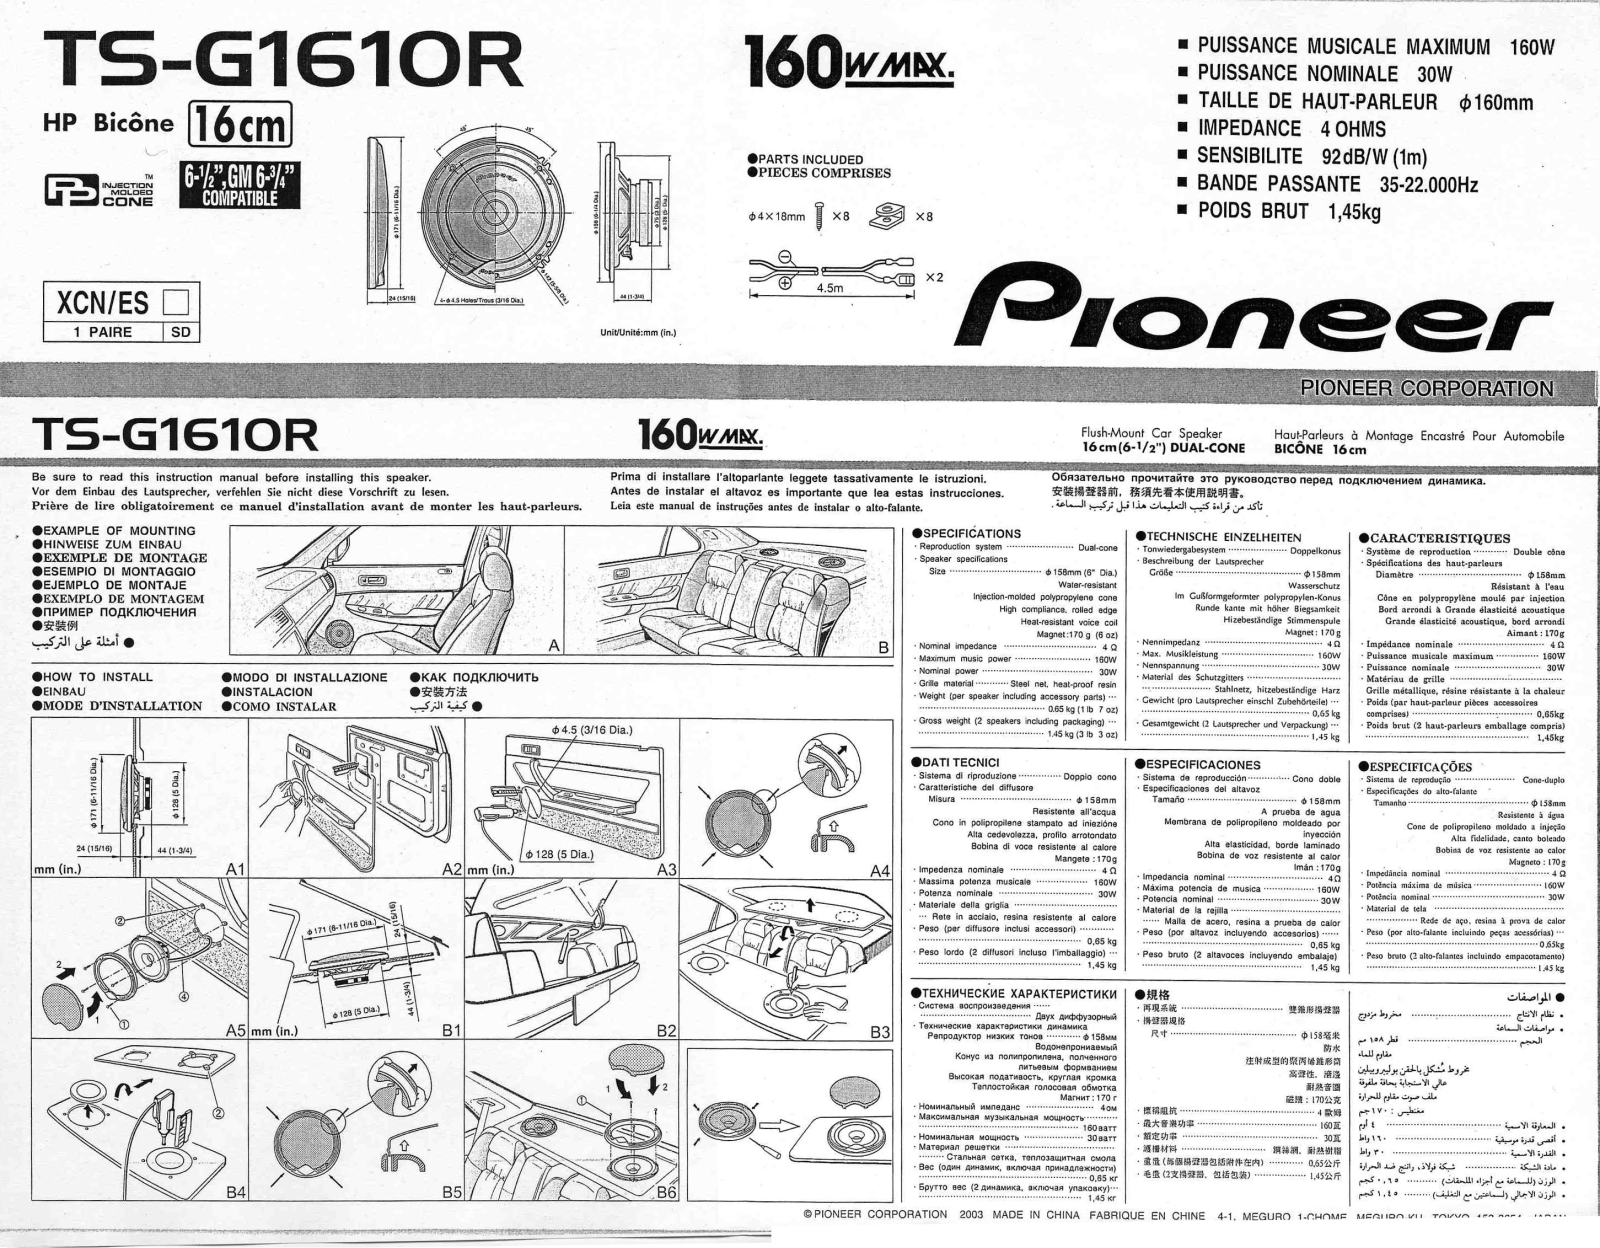 Pioneer TS-G1610R Manual